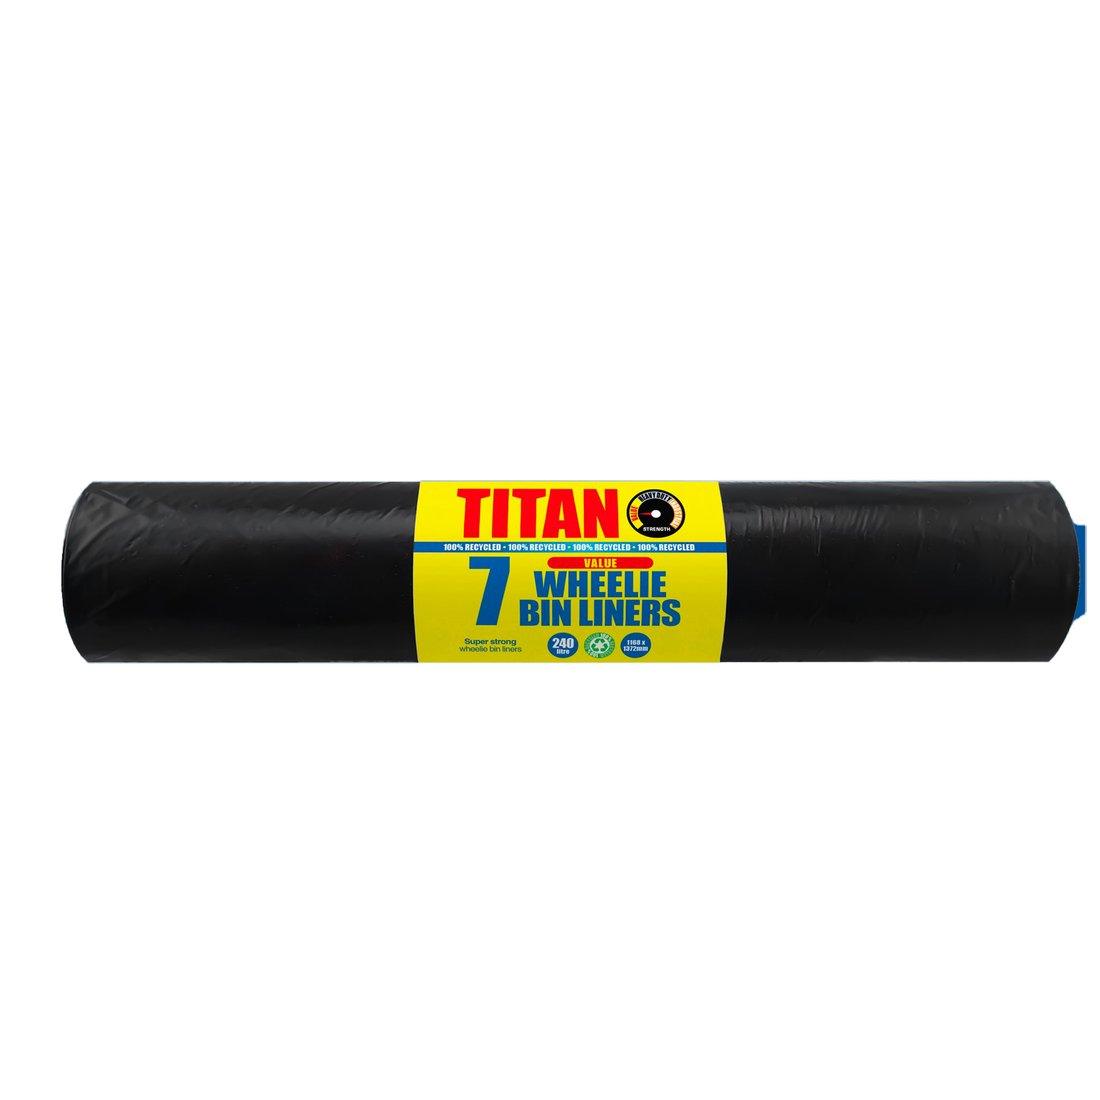 Titan - Roll of 7 Wheelie Bin Liners - Vending Superstore